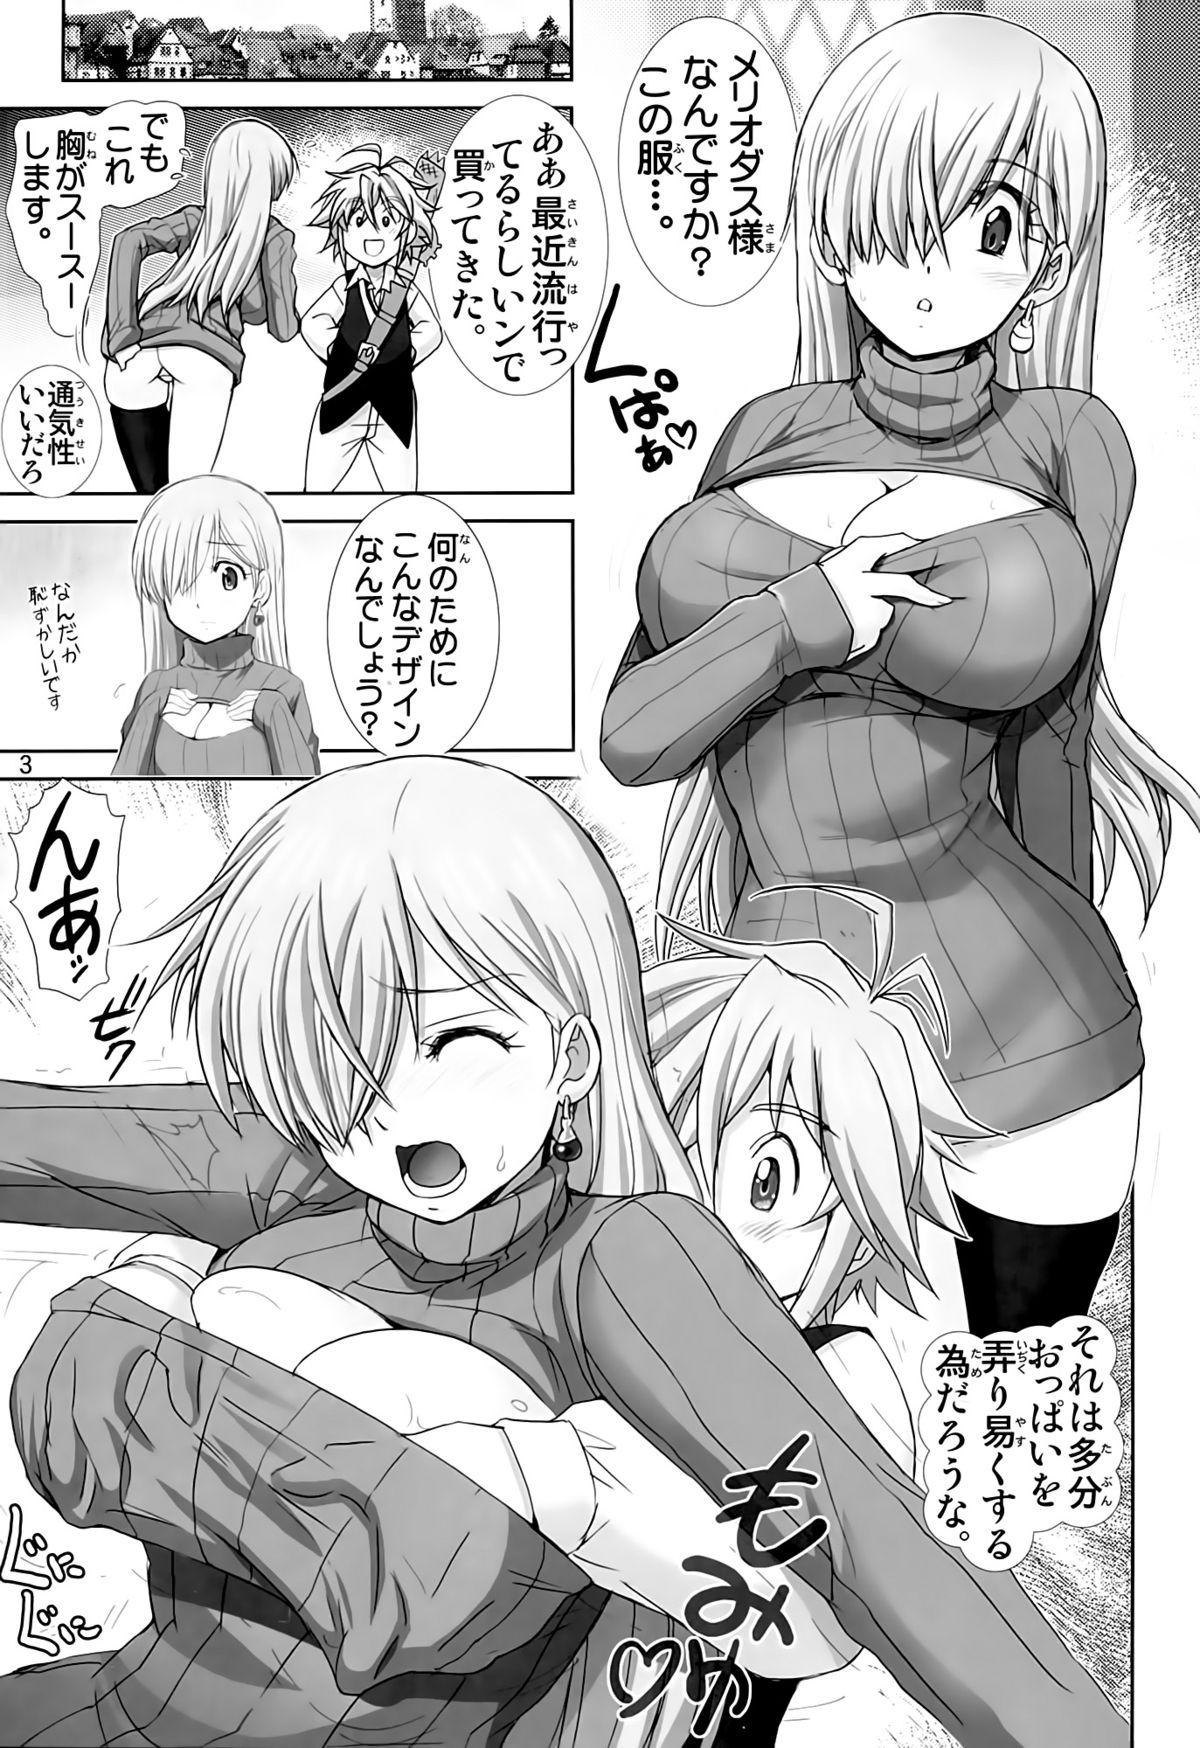 Petite Teen Elizabeth ni Rei no Sweater Kisete mita - Nanatsu no taizai Desnuda - Page 2